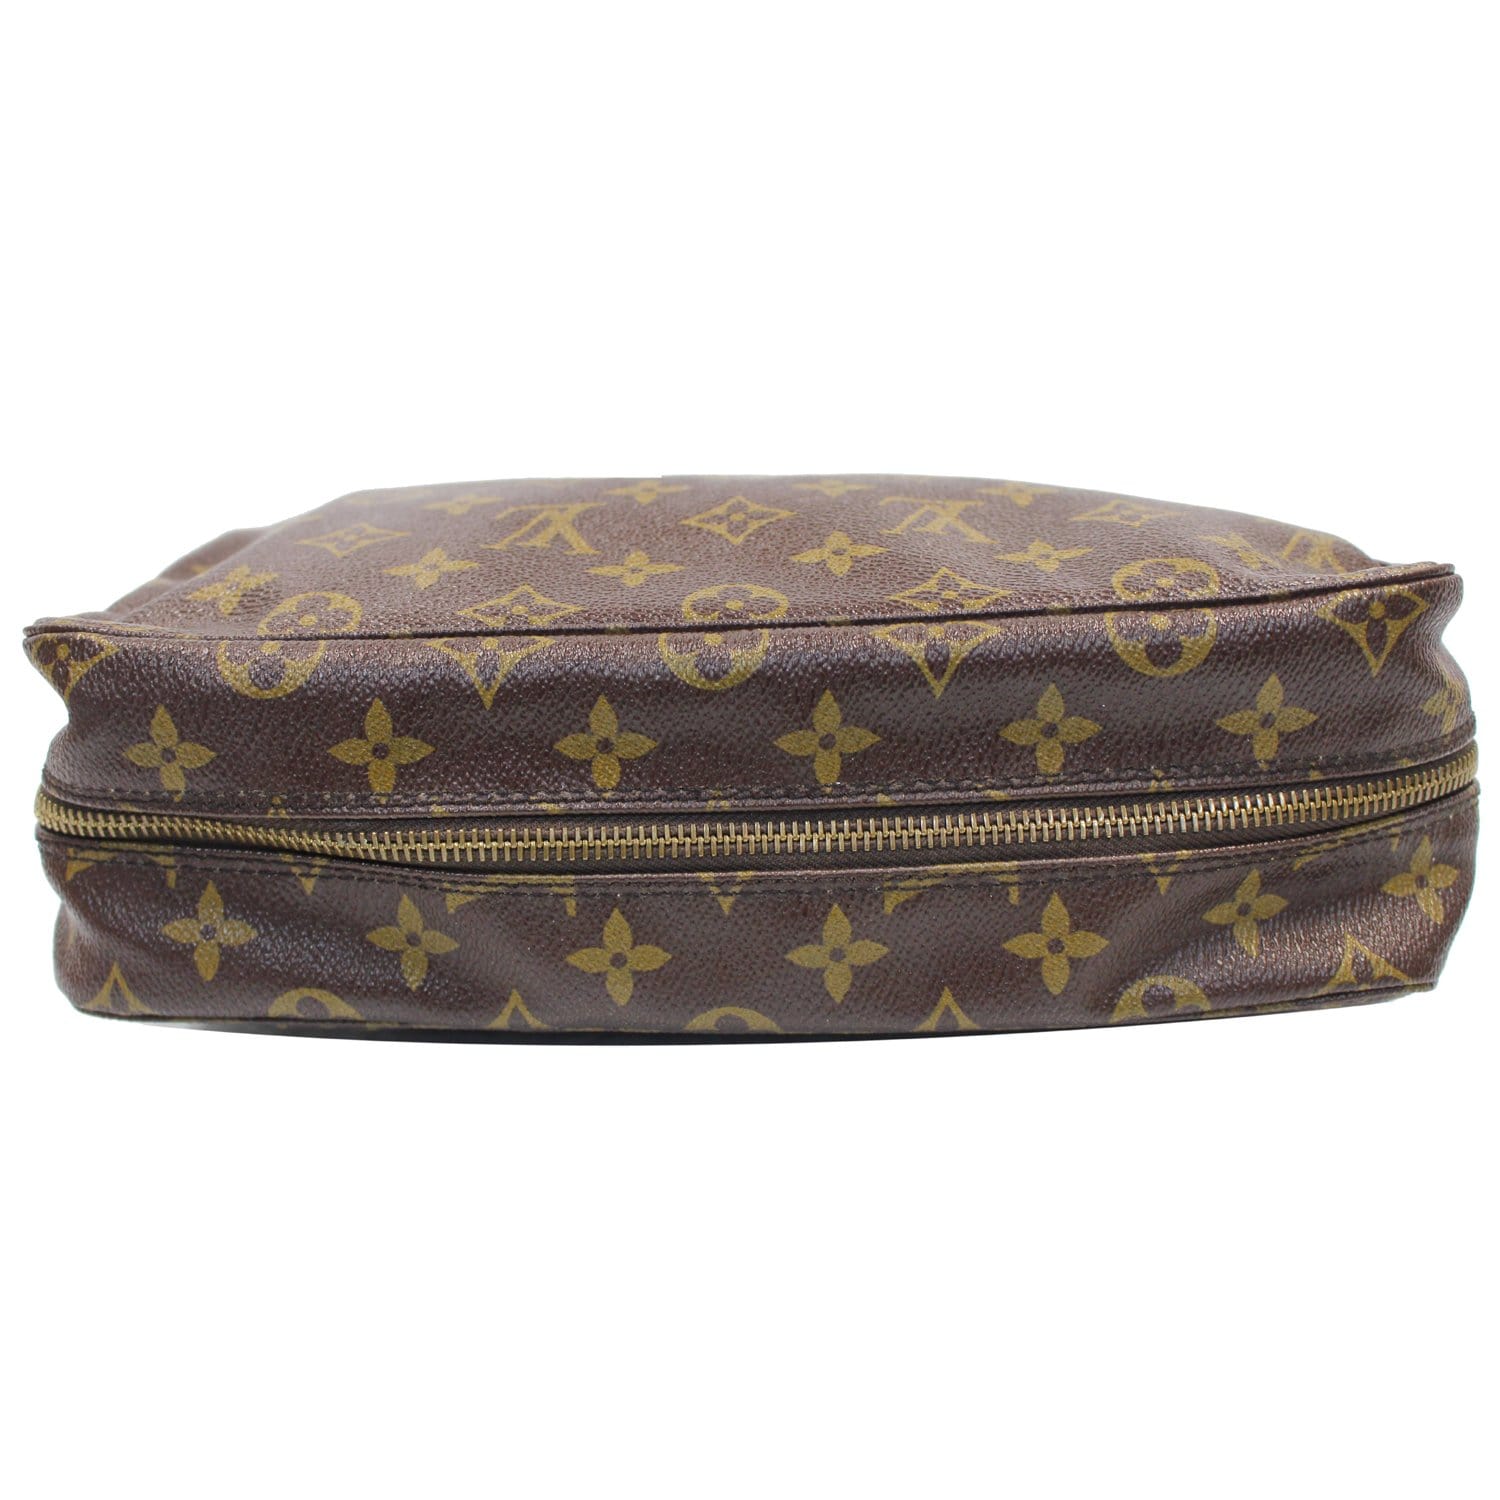 Trousse de toilette cloth travel bag Louis Vuitton Brown in Cloth